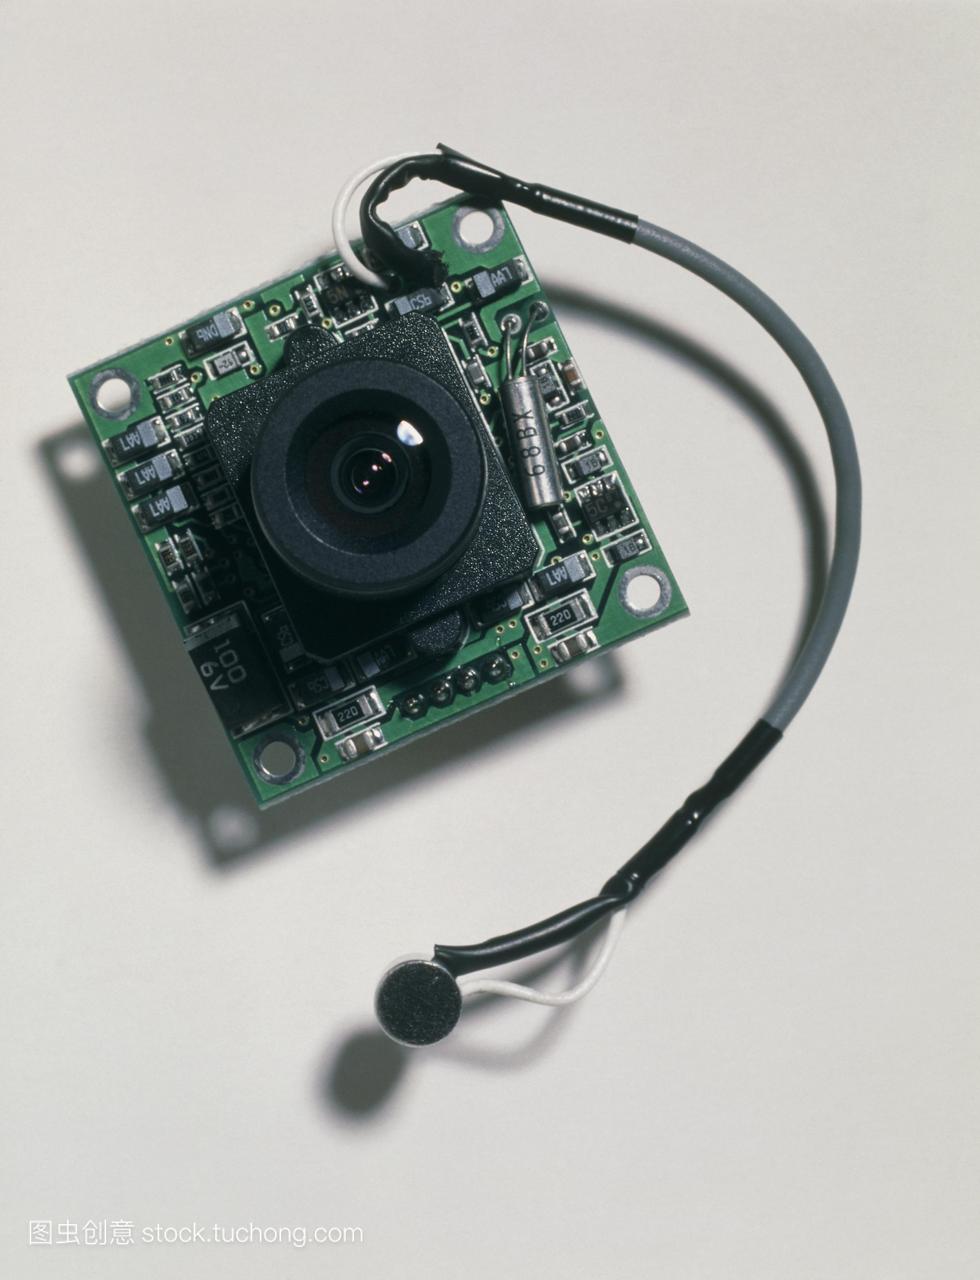 微型间谍相机。微型摄像机带有麦克风附件左下